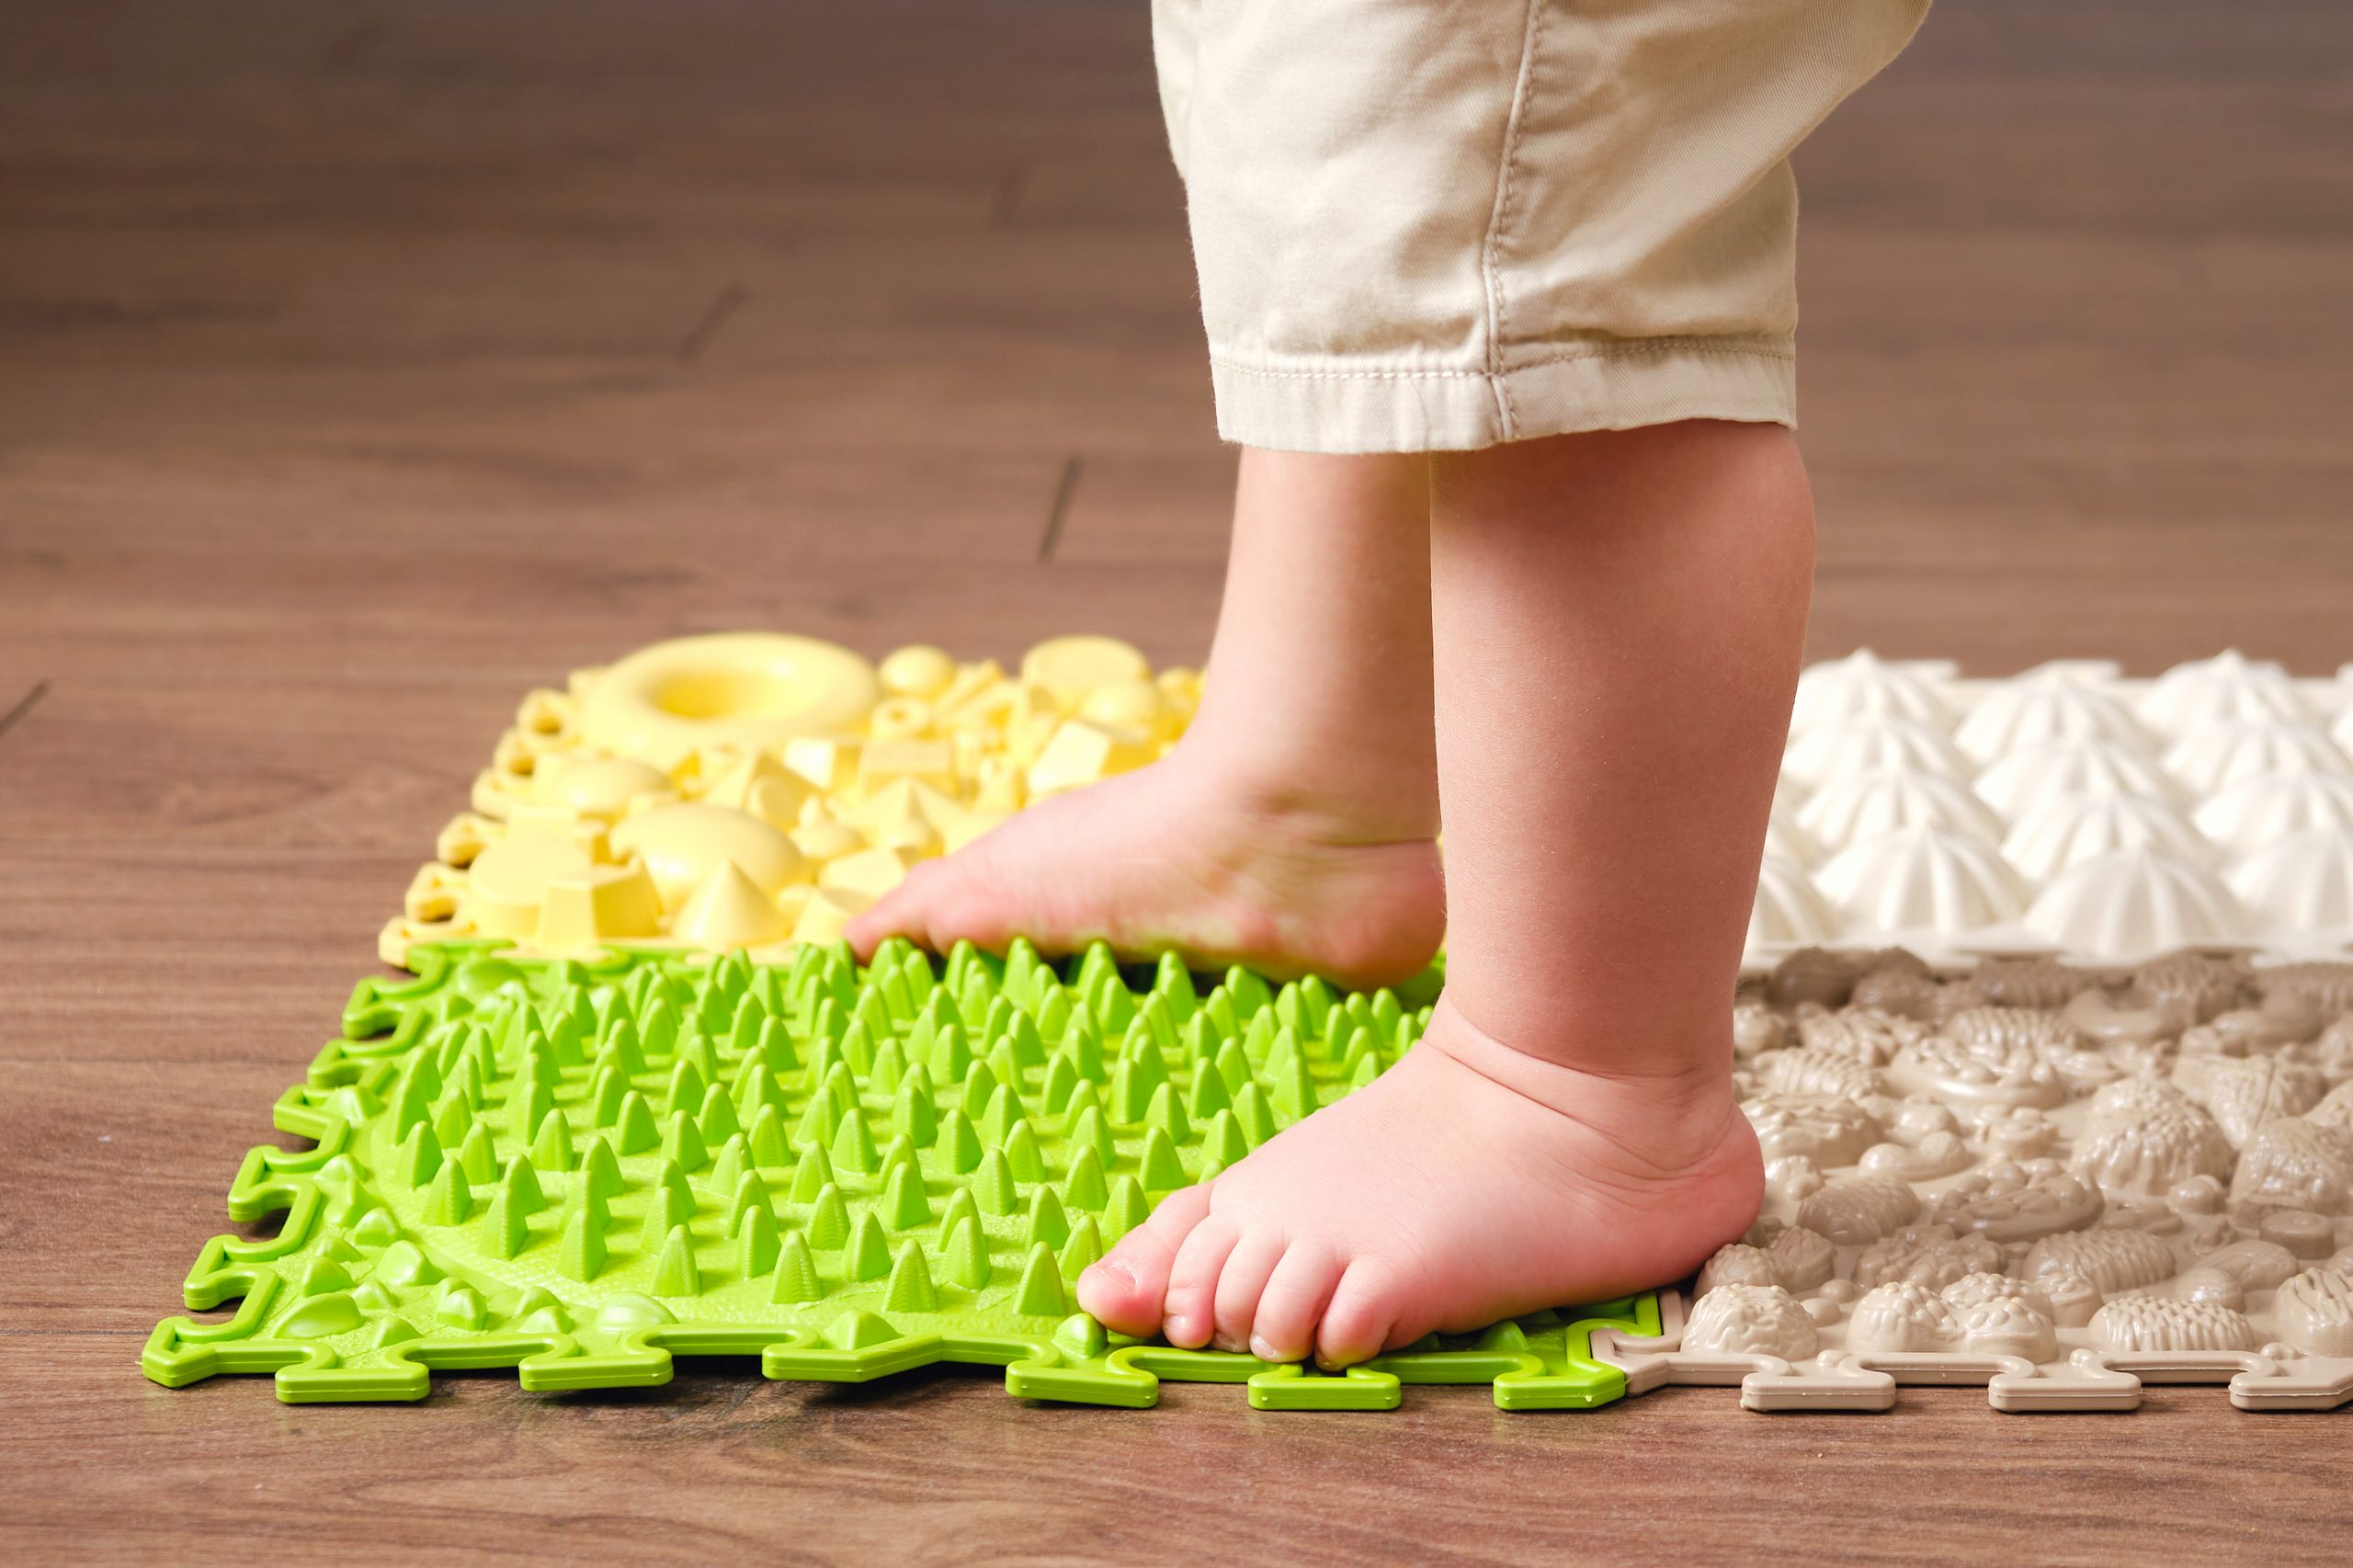 Zapatos para bebés - Criar con Sentido Común